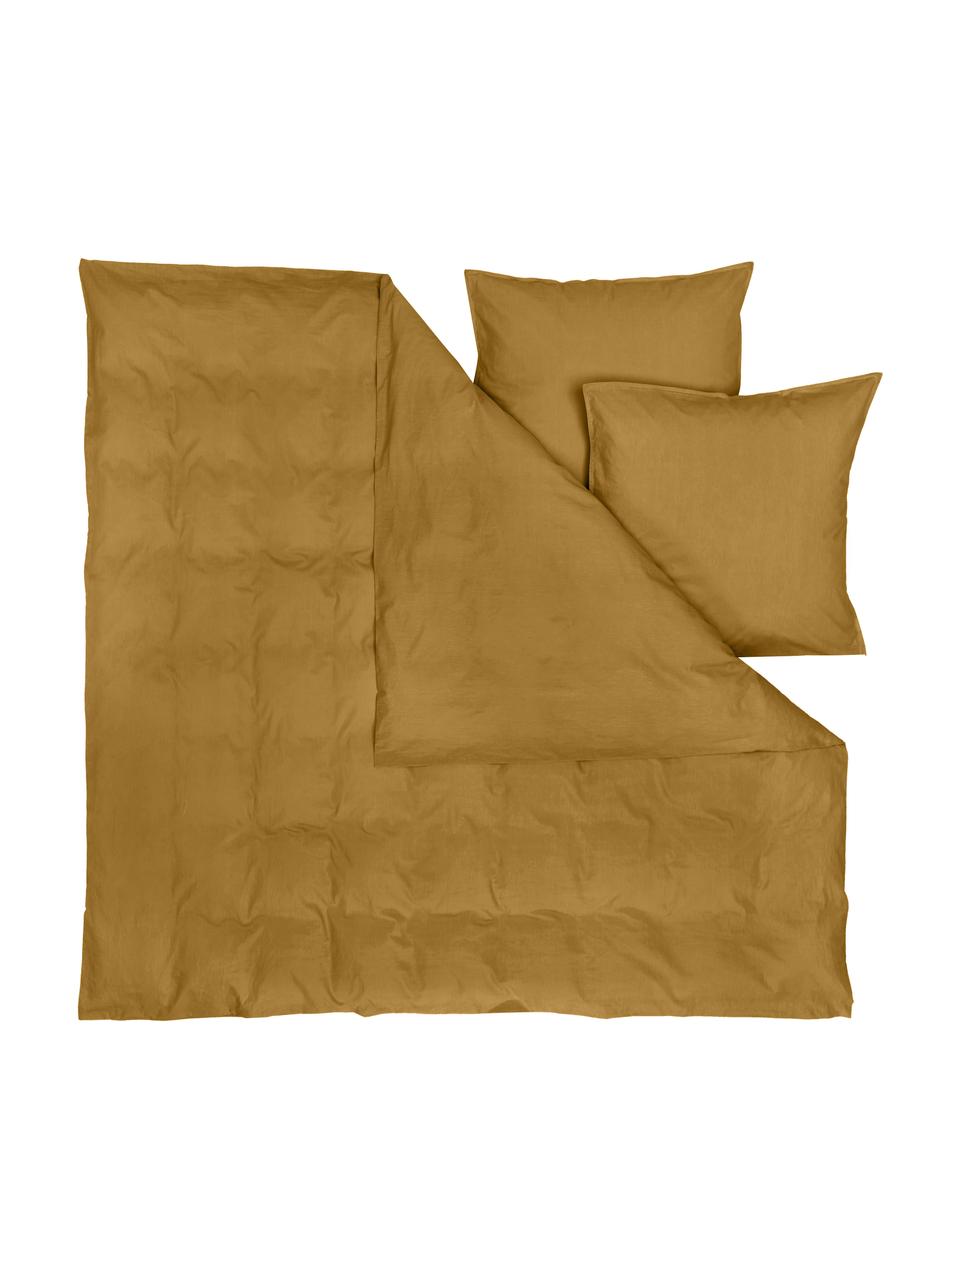 Pościel z bawełny z efektem sprania Arlene, Żółty, 200 x 200 cm + 2 poduszki 80 x 80 cm